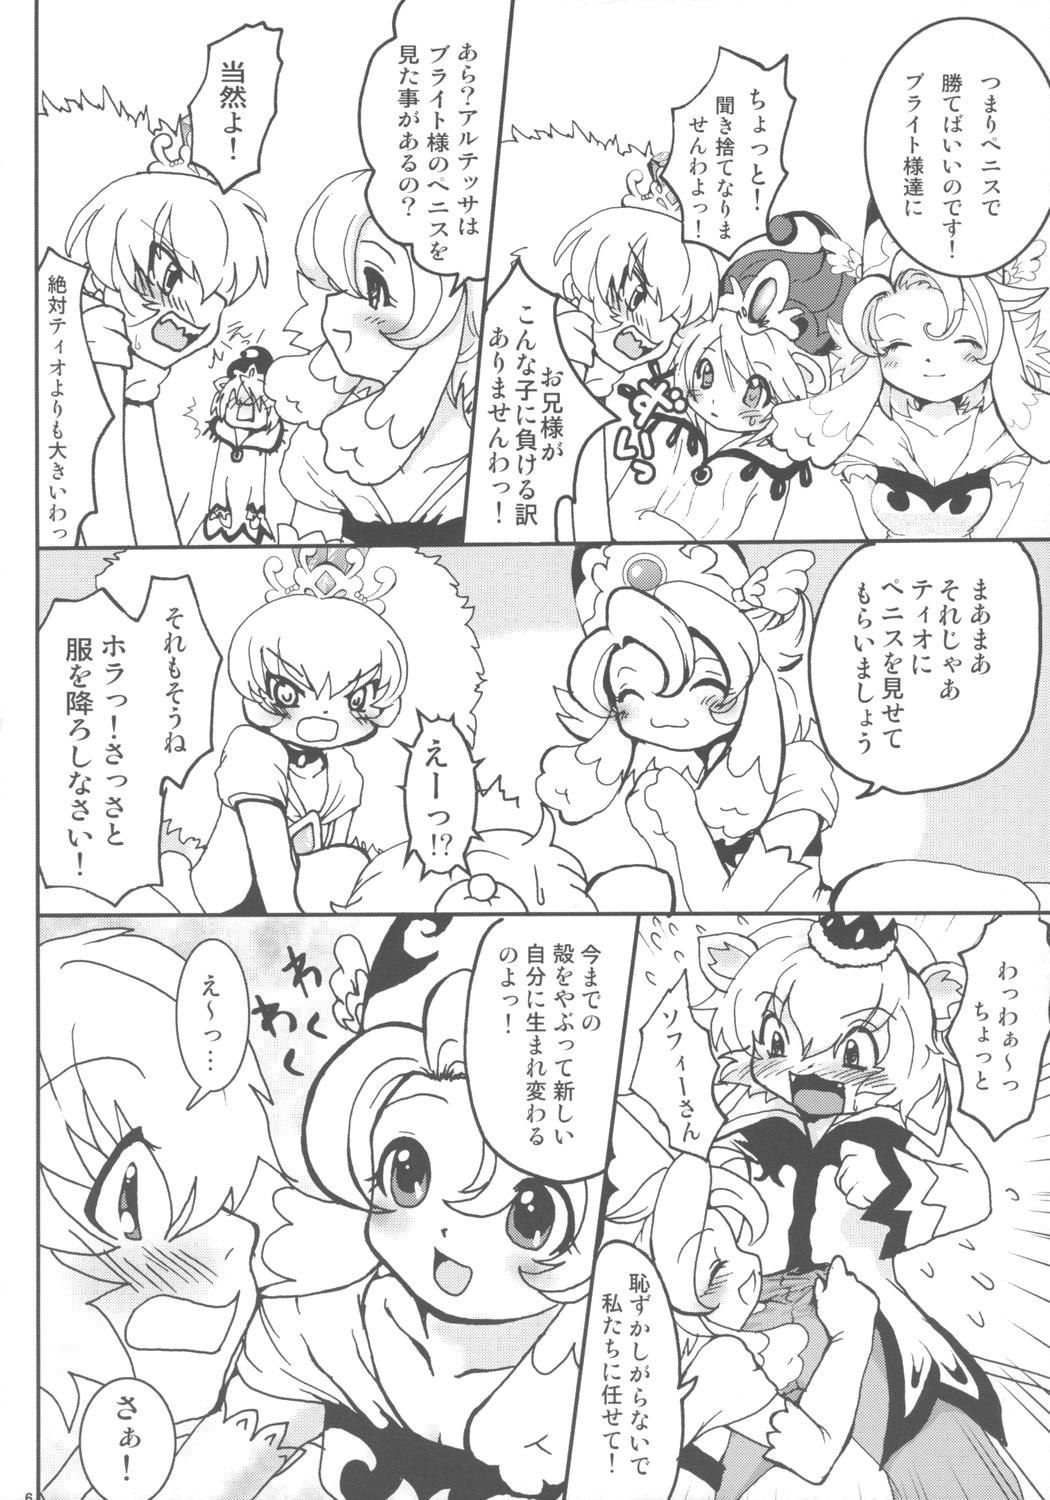 Hot Mom Ochakai Shimasho - Fushigiboshi no futagohime Tattoos - Page 5